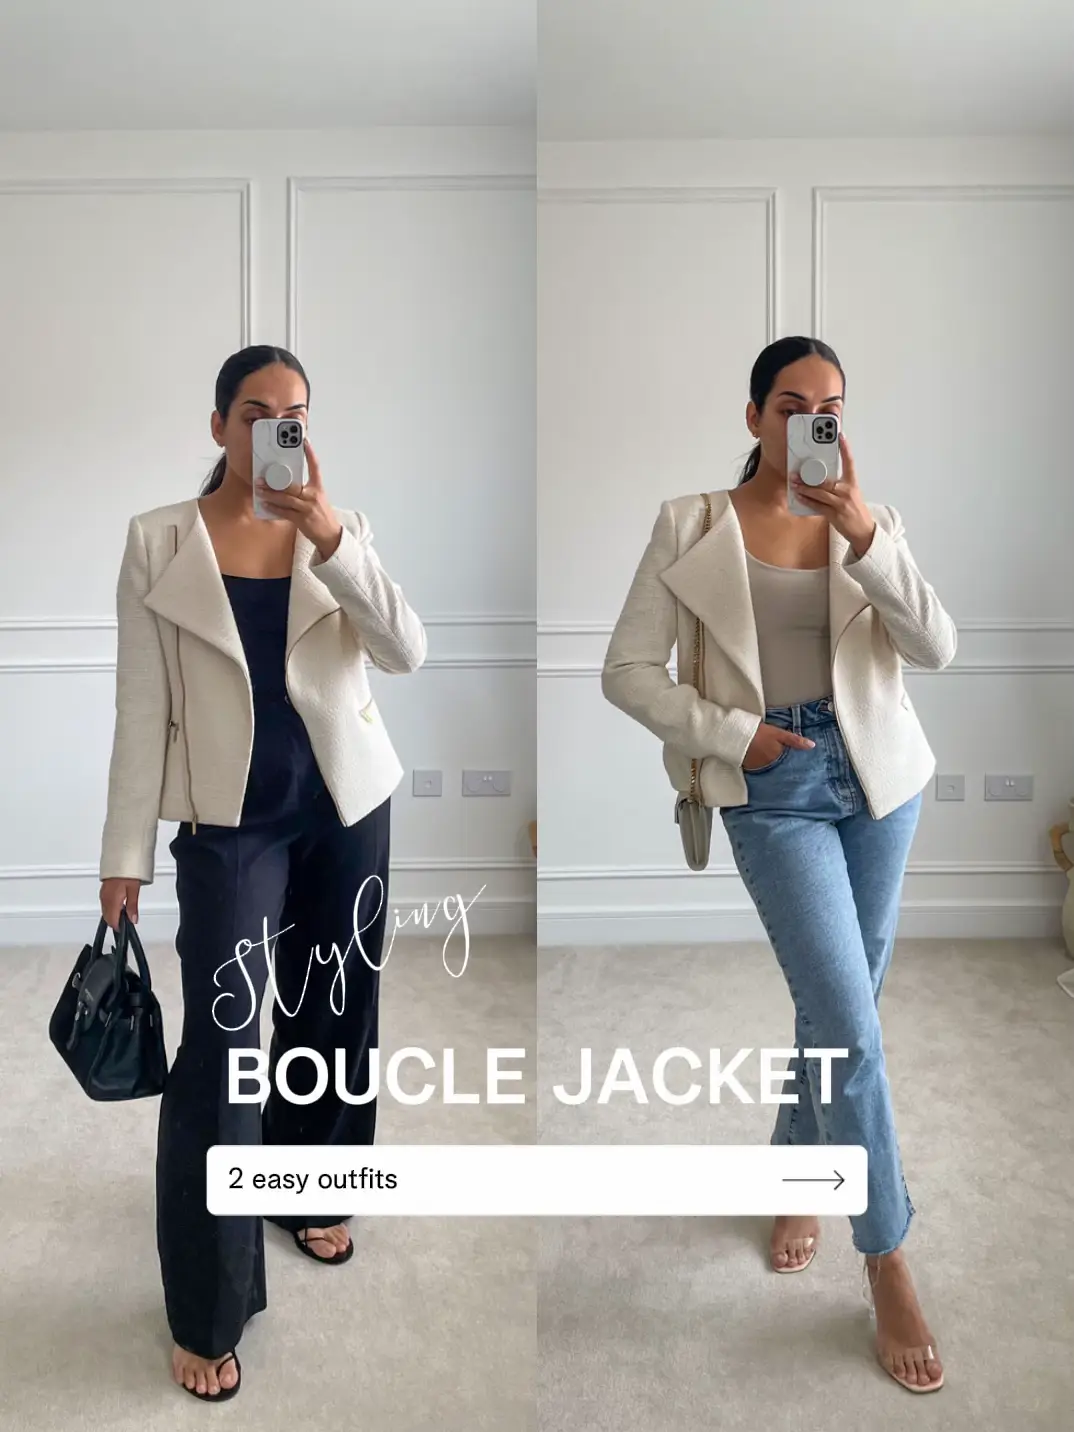 Styling Saint & Sofia Boucle jacket